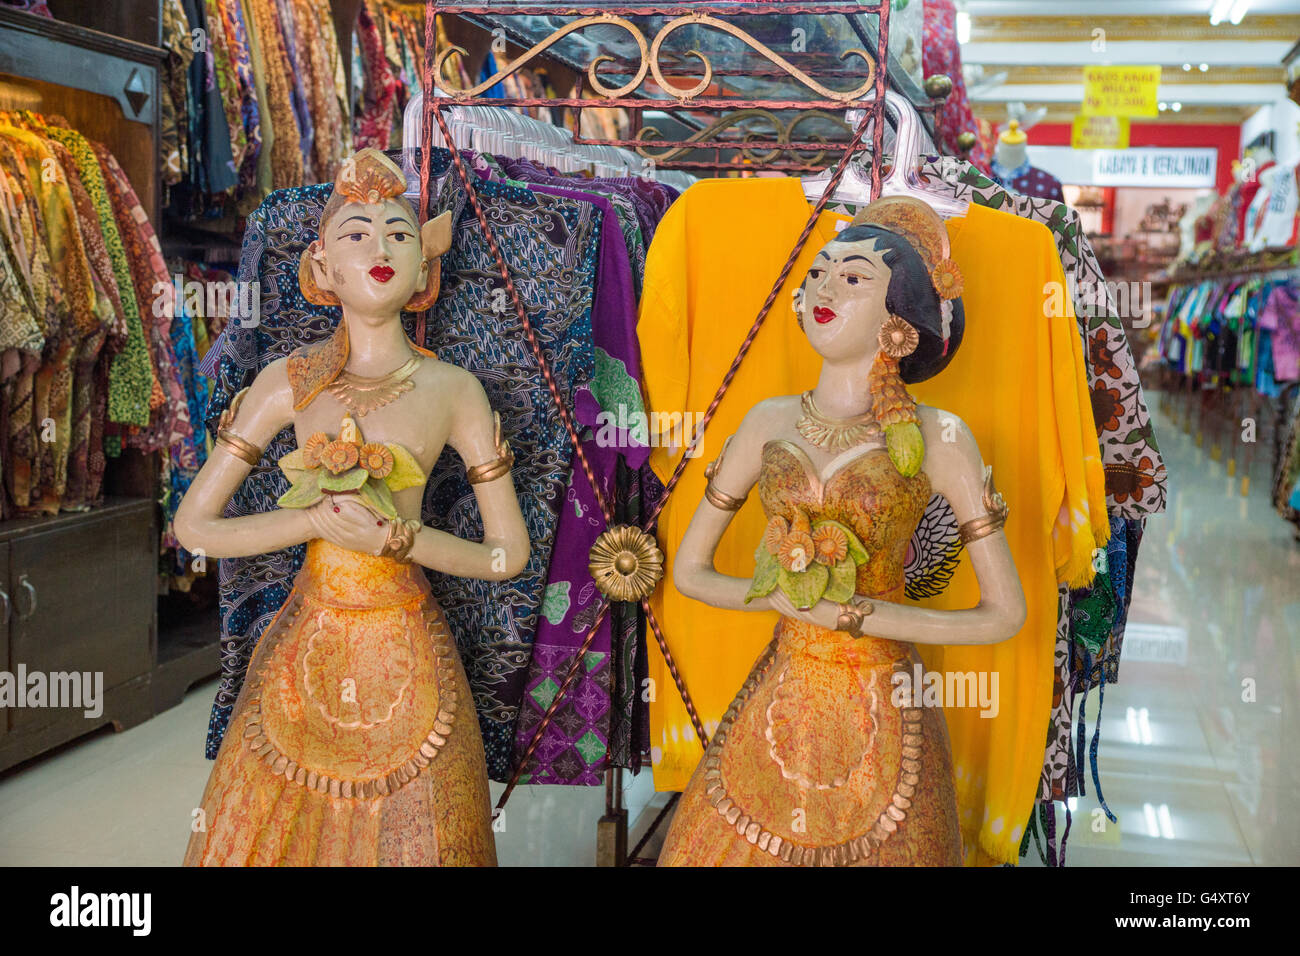 L'Indonésie, de Java, Yogyakarta, des magasins de la rue commerçante Malioboro, vente de vêtements batik Banque D'Images